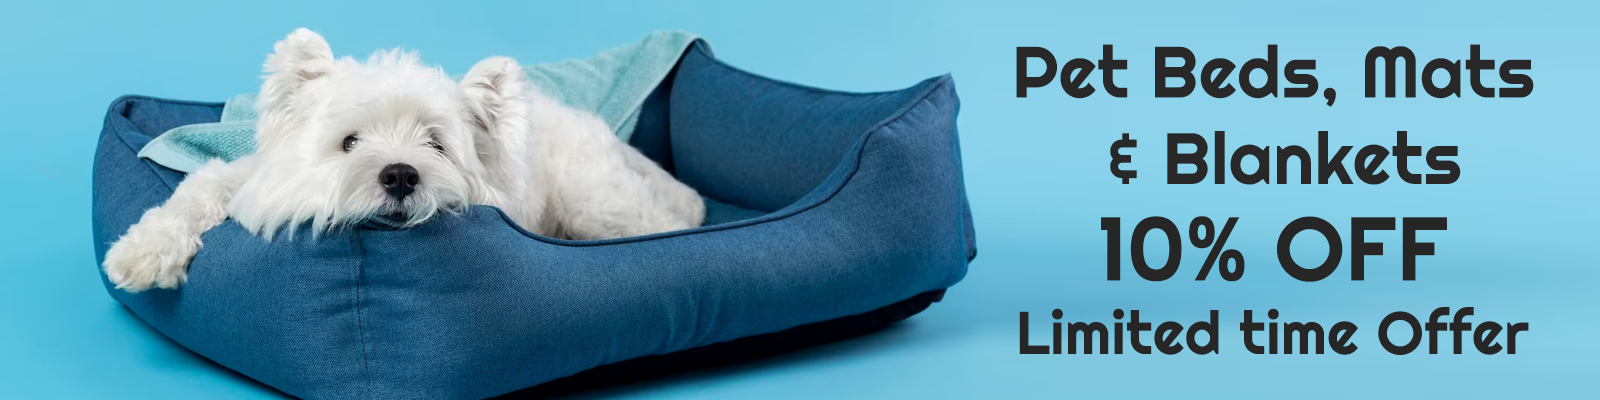 Pet Beds, Mats & Blankets